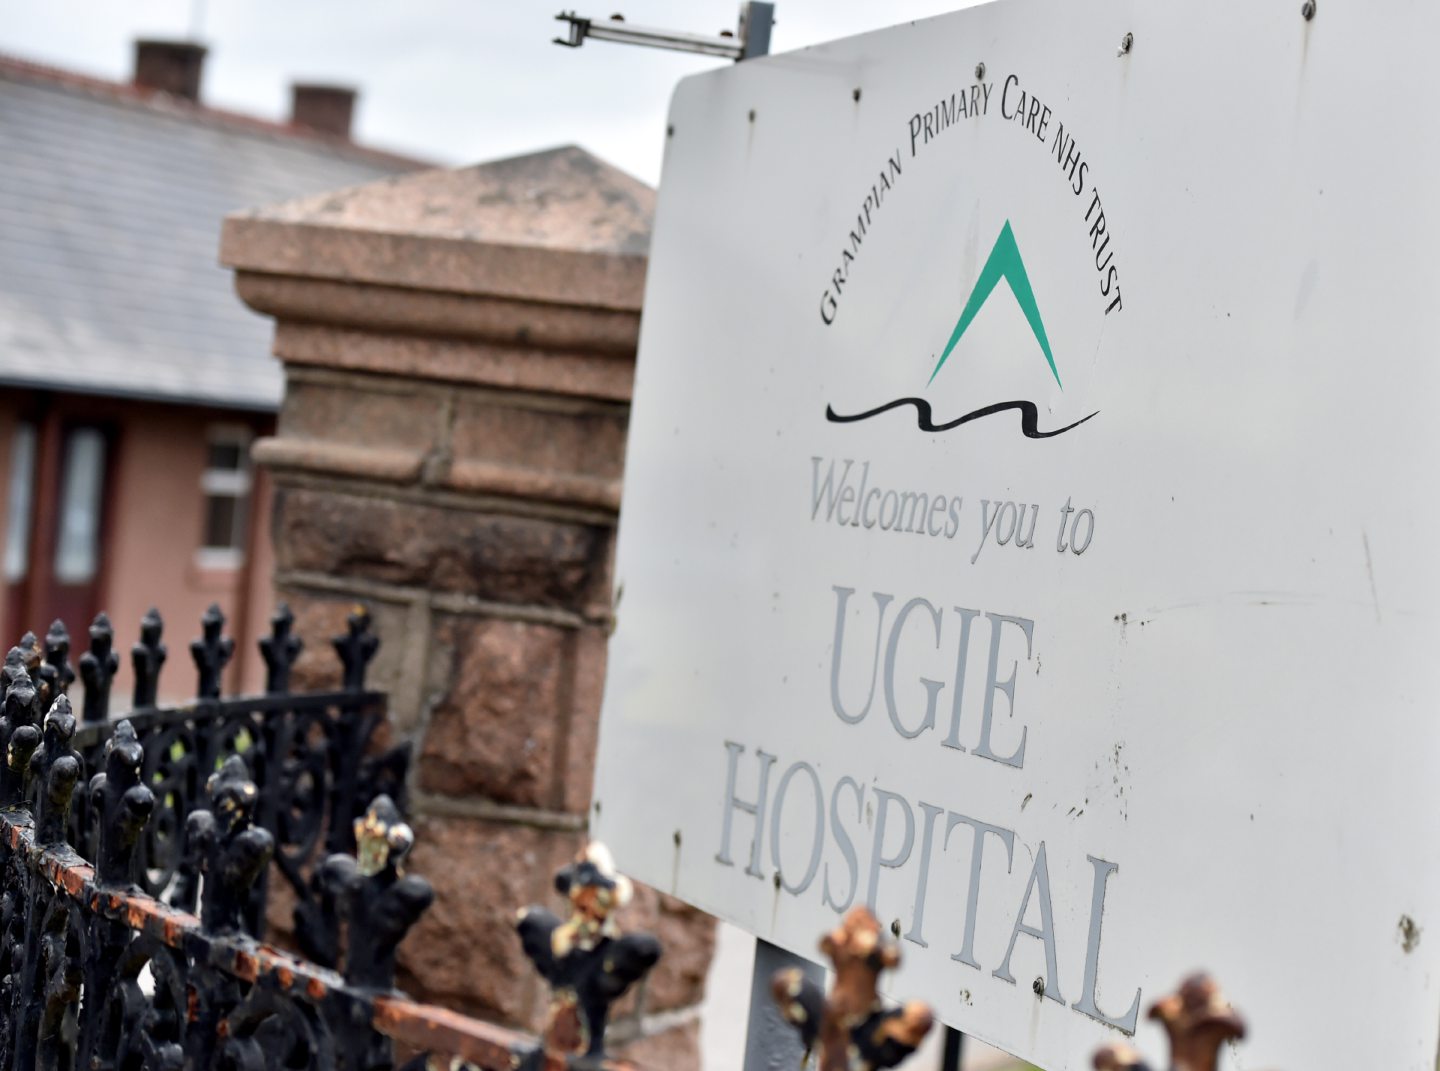 UGIE Hospital Peterhead.